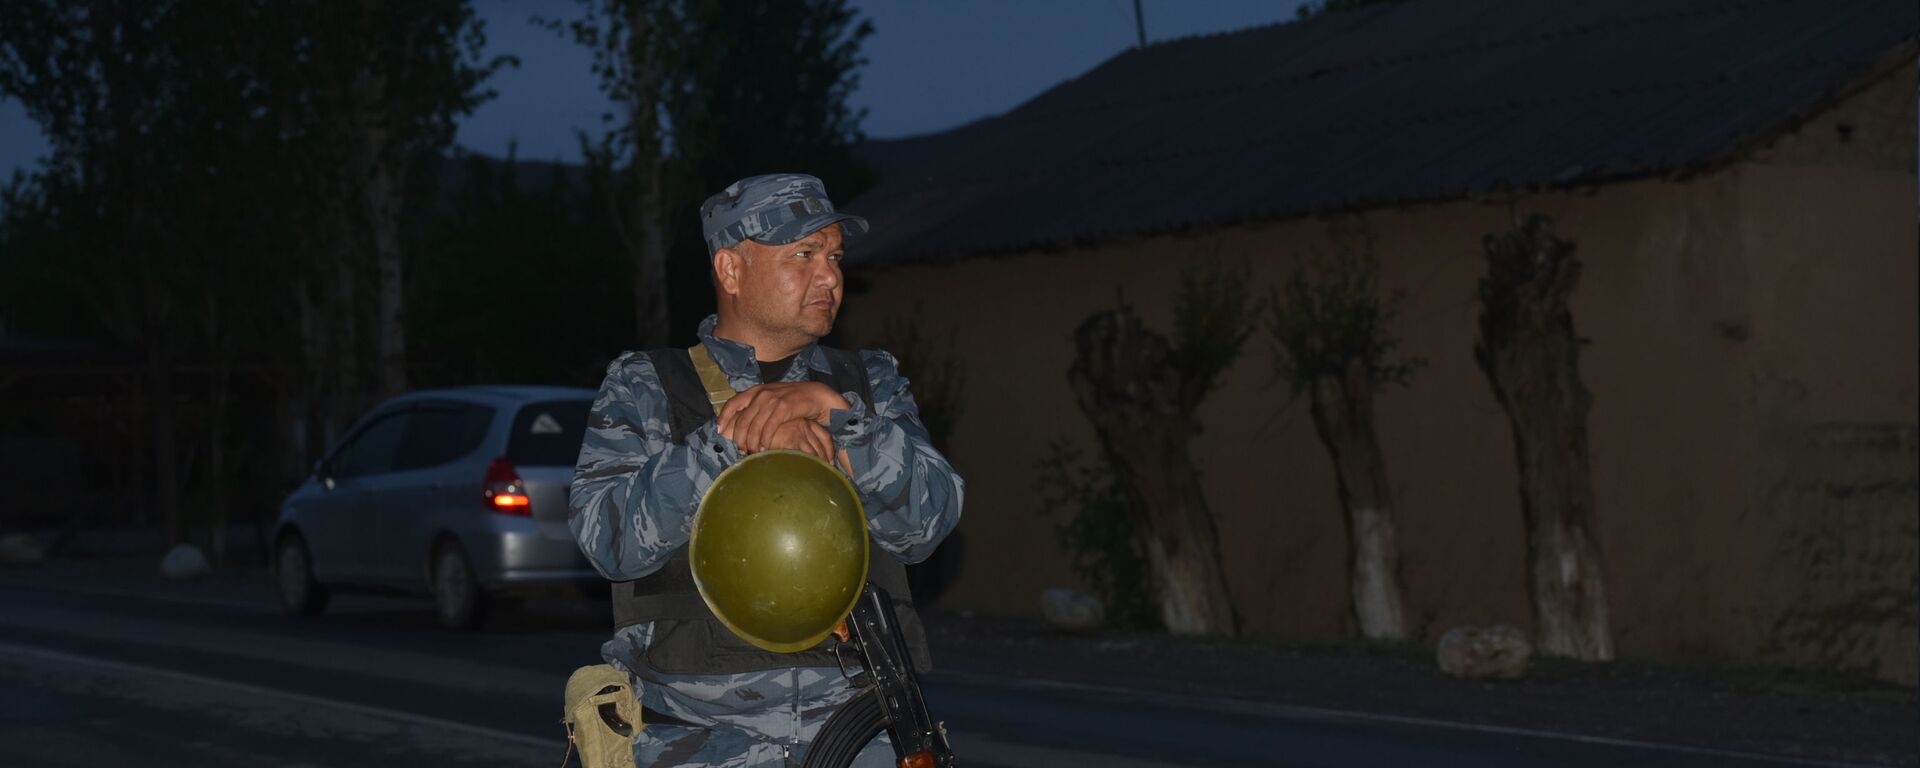 Военнослужащий стоит у дороги в селе Кок-Сай Баткенской области, во время приграничного конфликта Кыргызстана и Таджикистана - Sputnik Кыргызстан, 1920, 01.05.2021